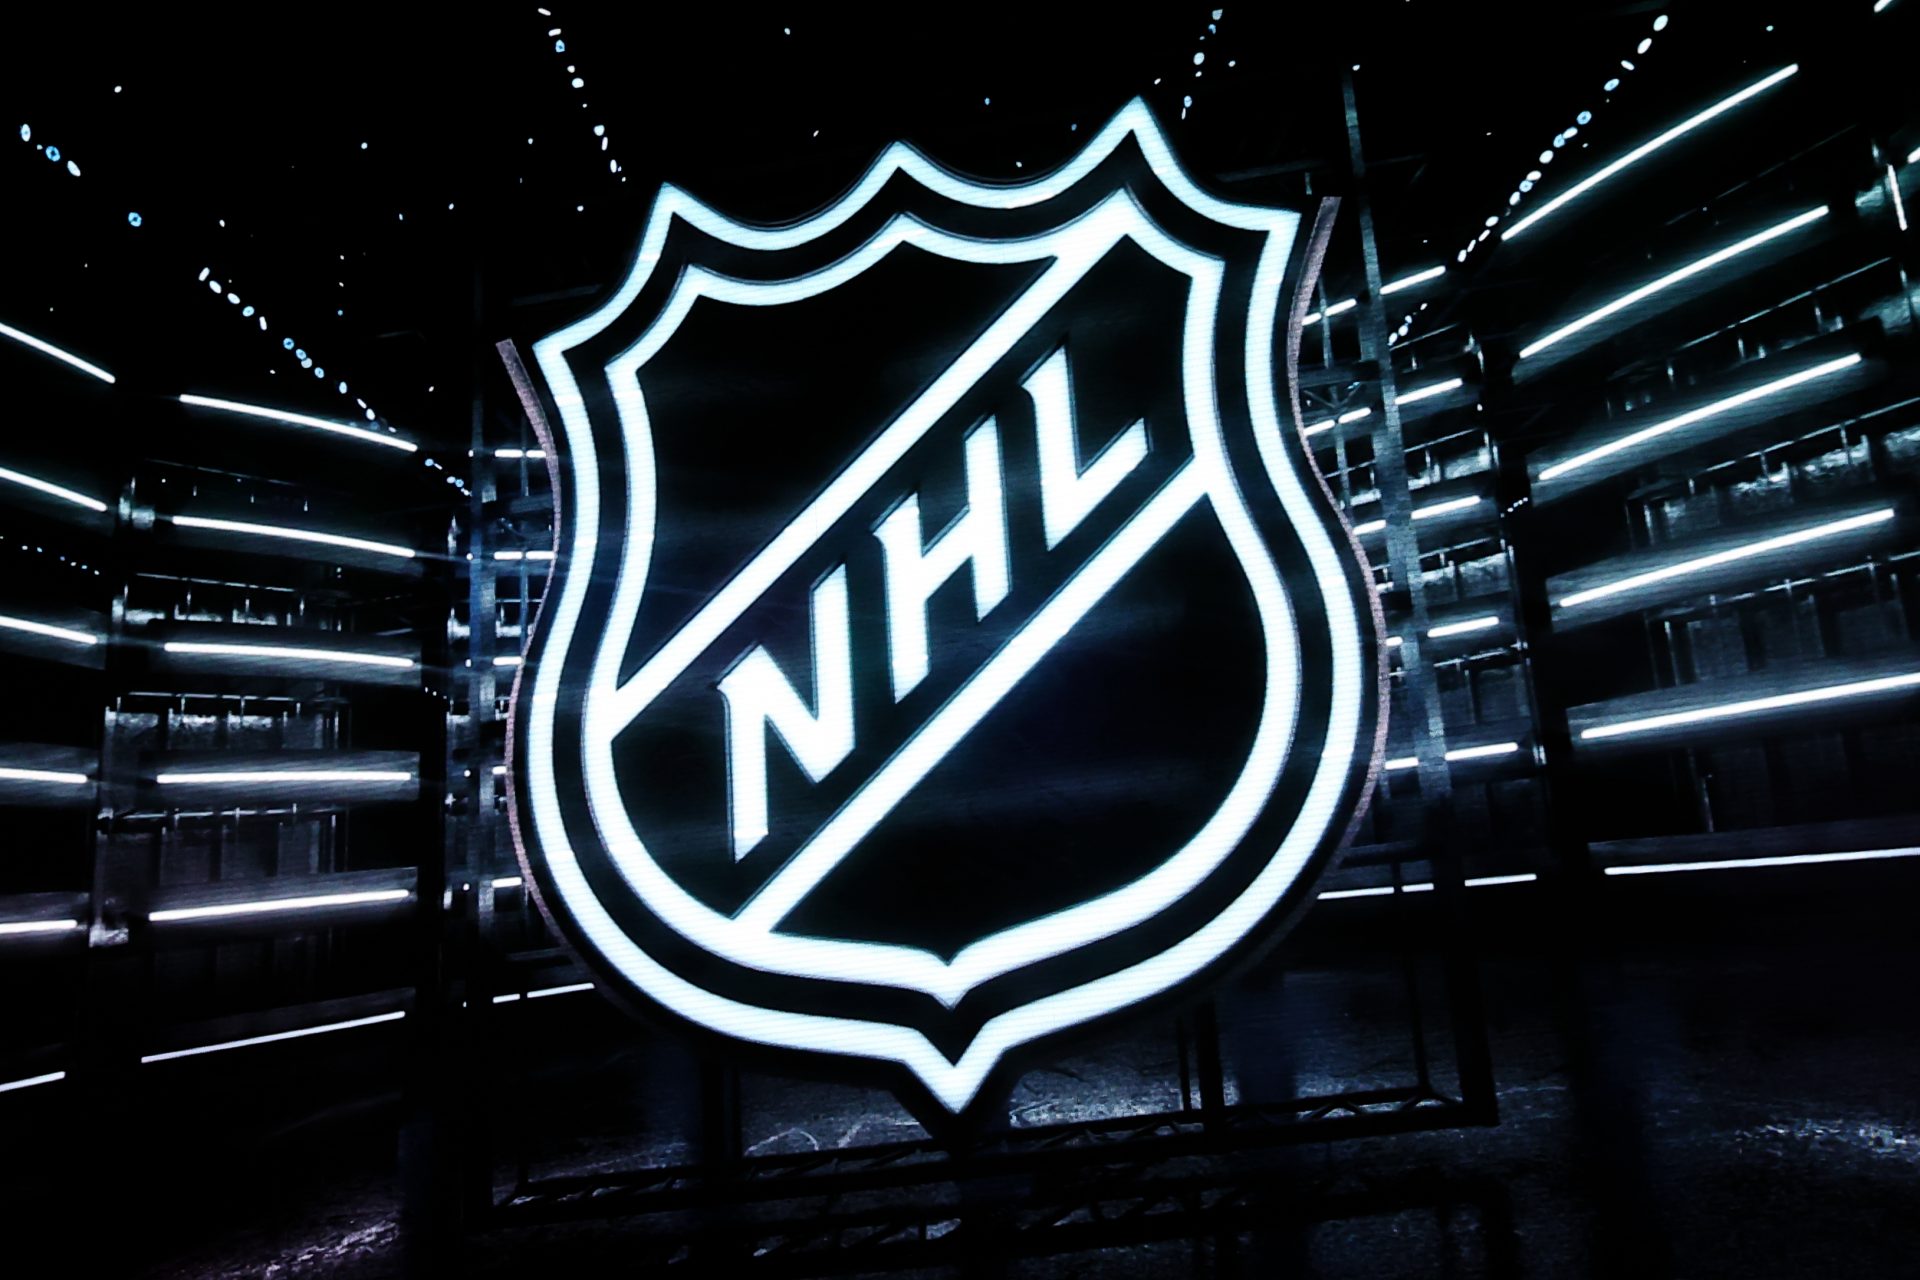 2021-22 NHL Agenda to Be Released Thursday on SportsCenter